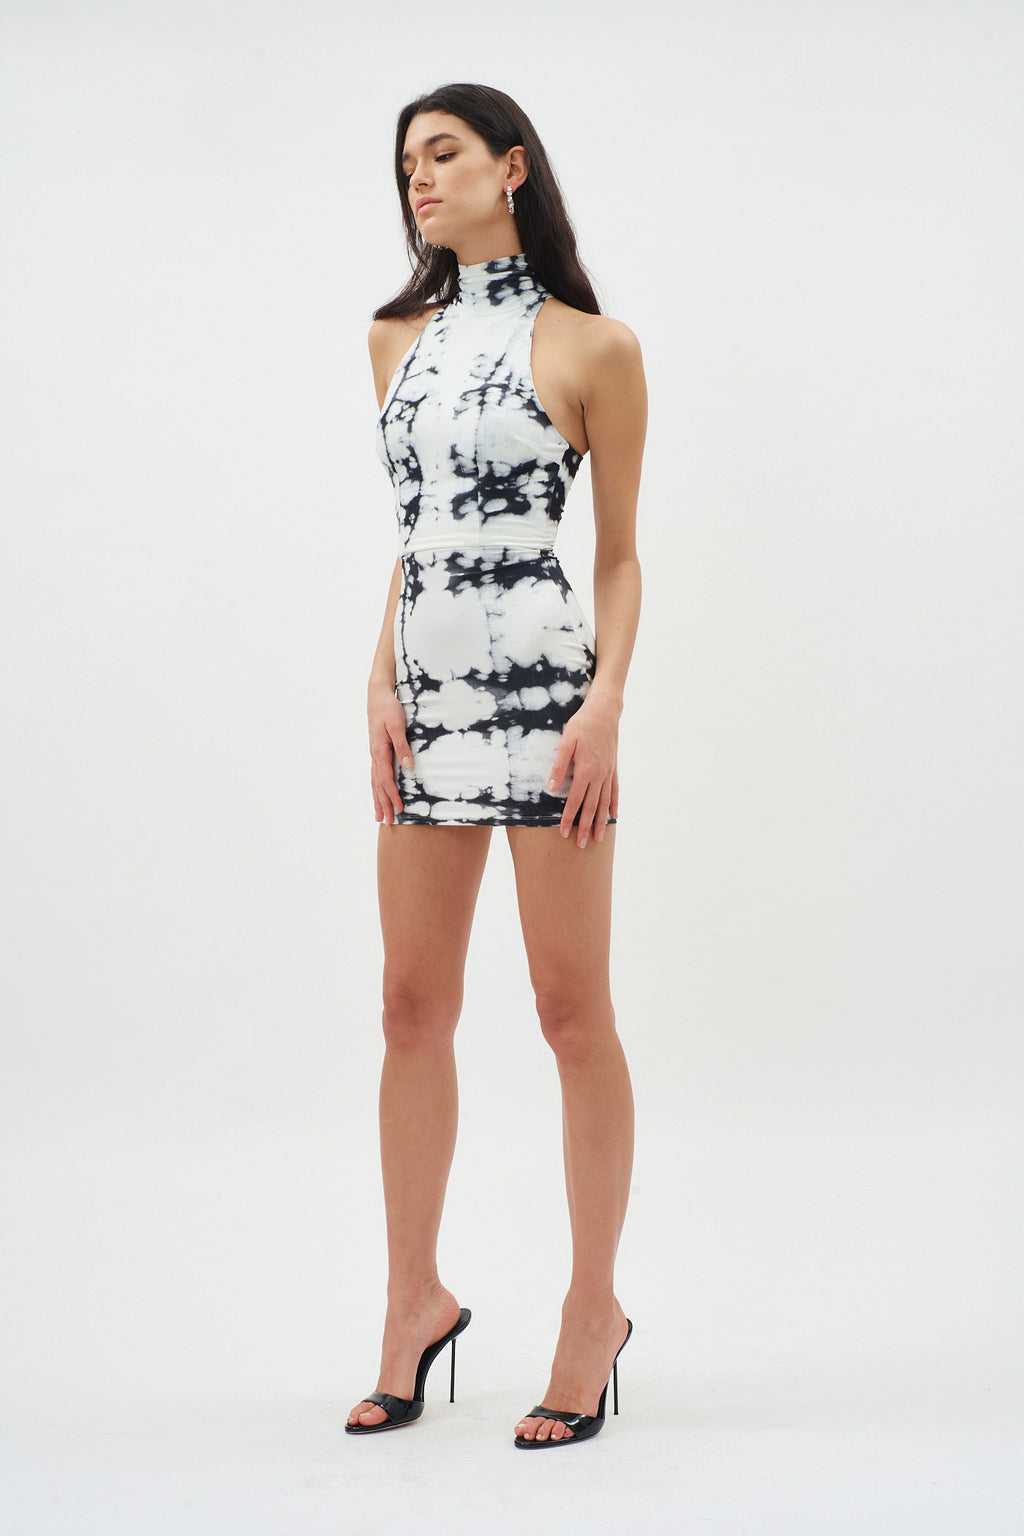 Boden White Black Print Mini Dress